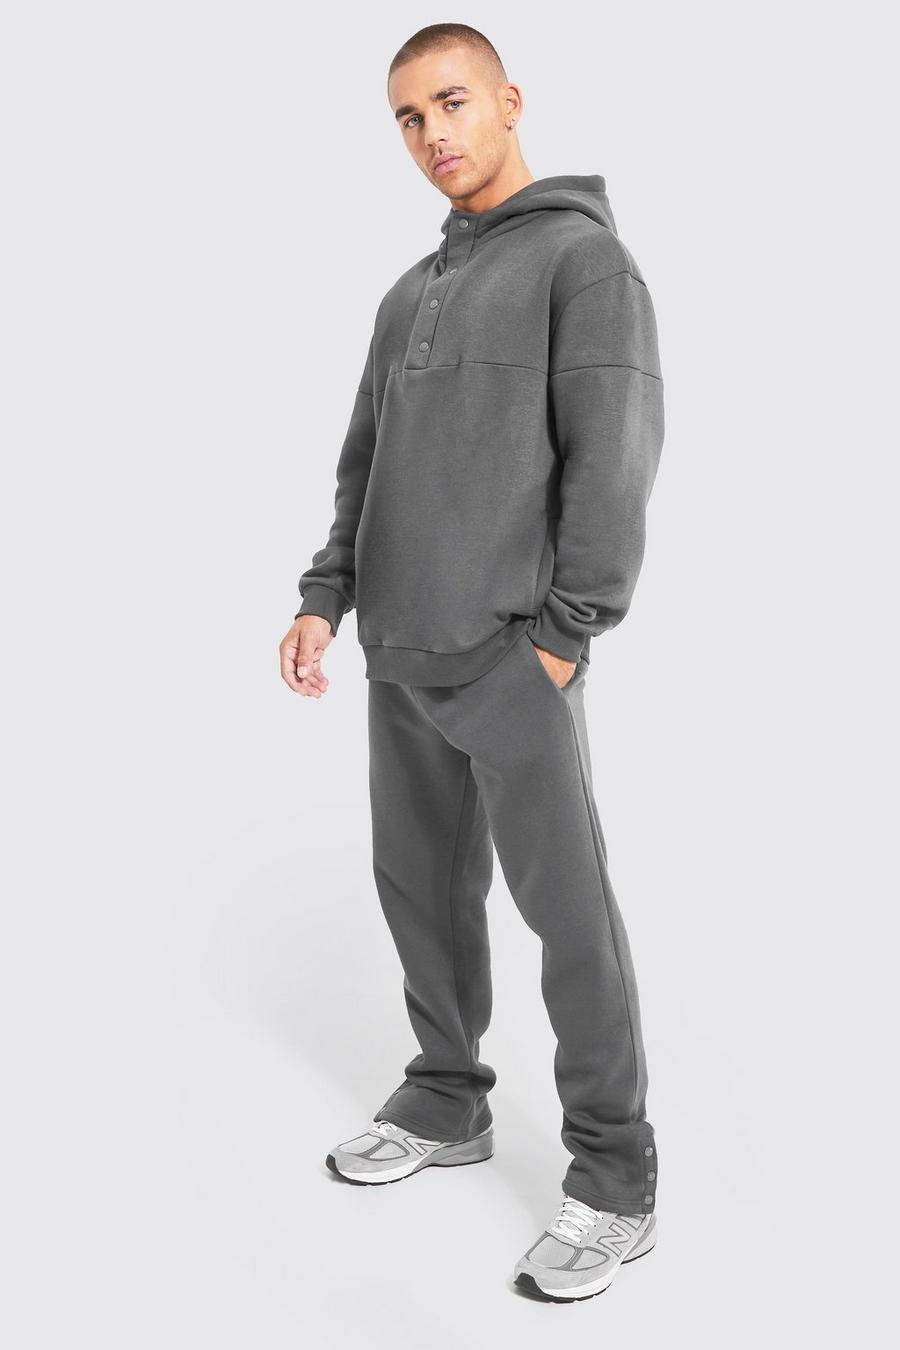 Charcoal grå Oversized hoodie och mjukisbyxor